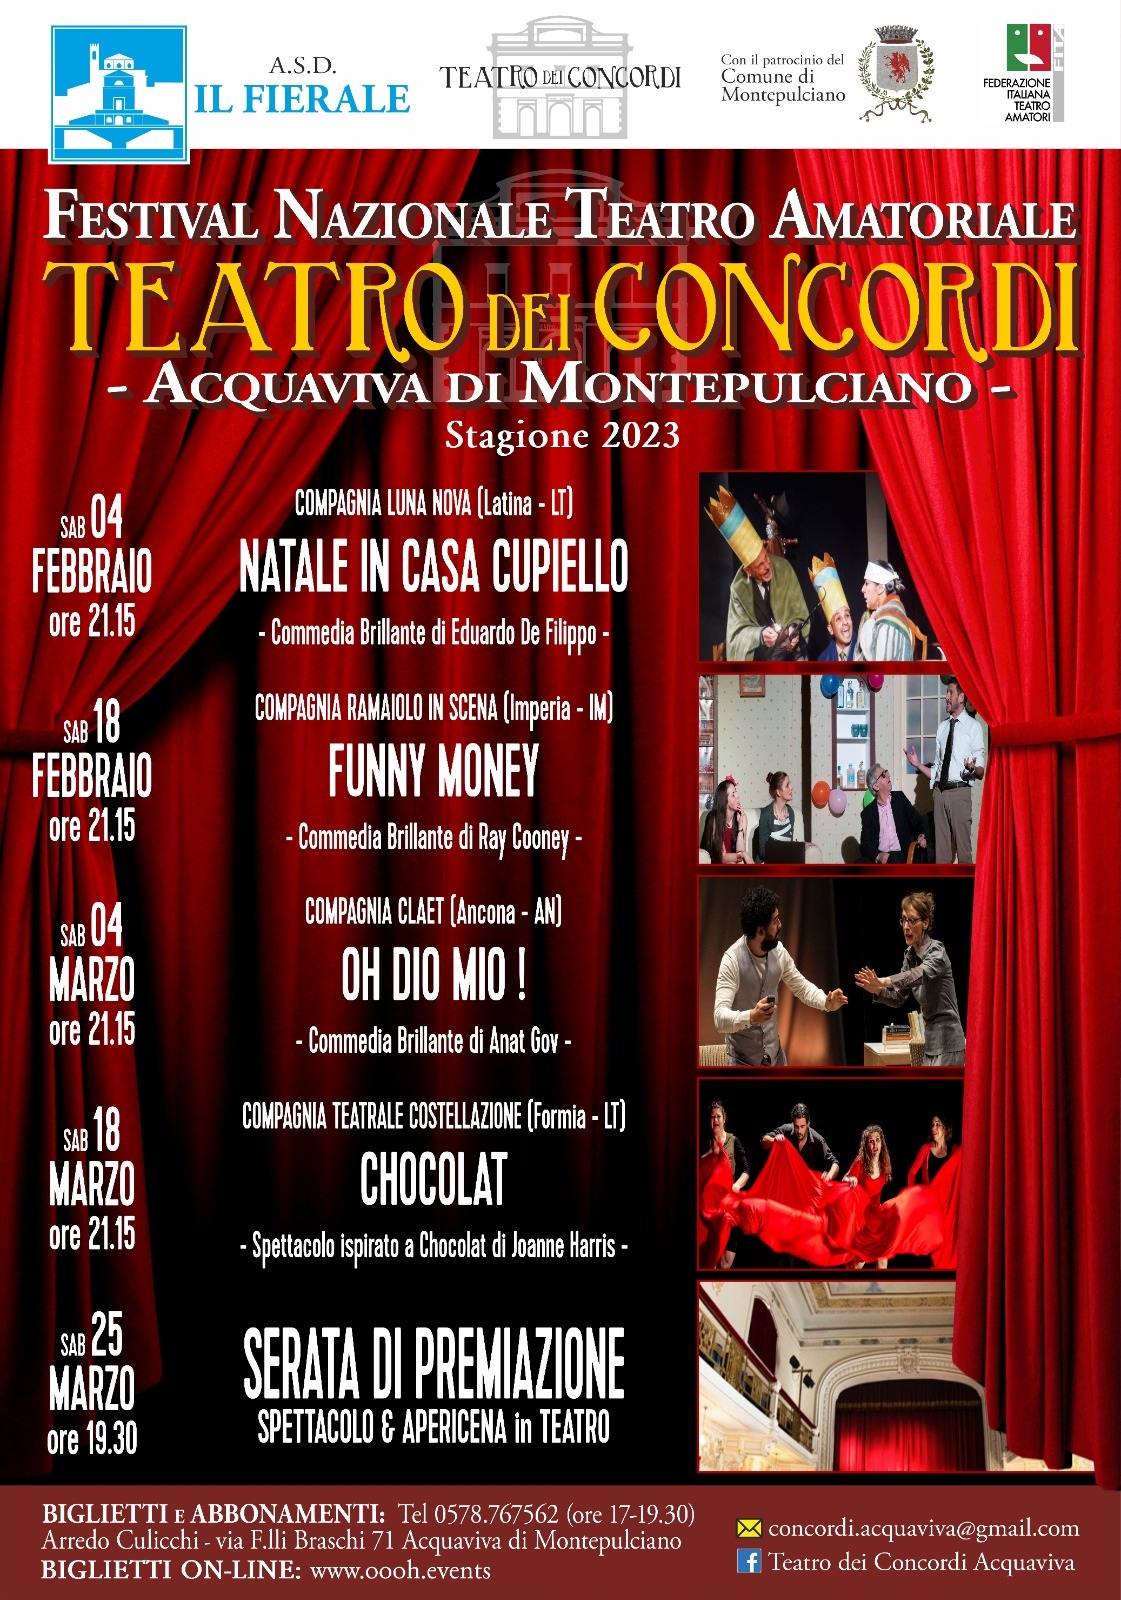 Oh Dio mio! finalista al festival nazionale di Teatro Amatoriale al teatro dei Concordi di Acquaviva di Montepulciano